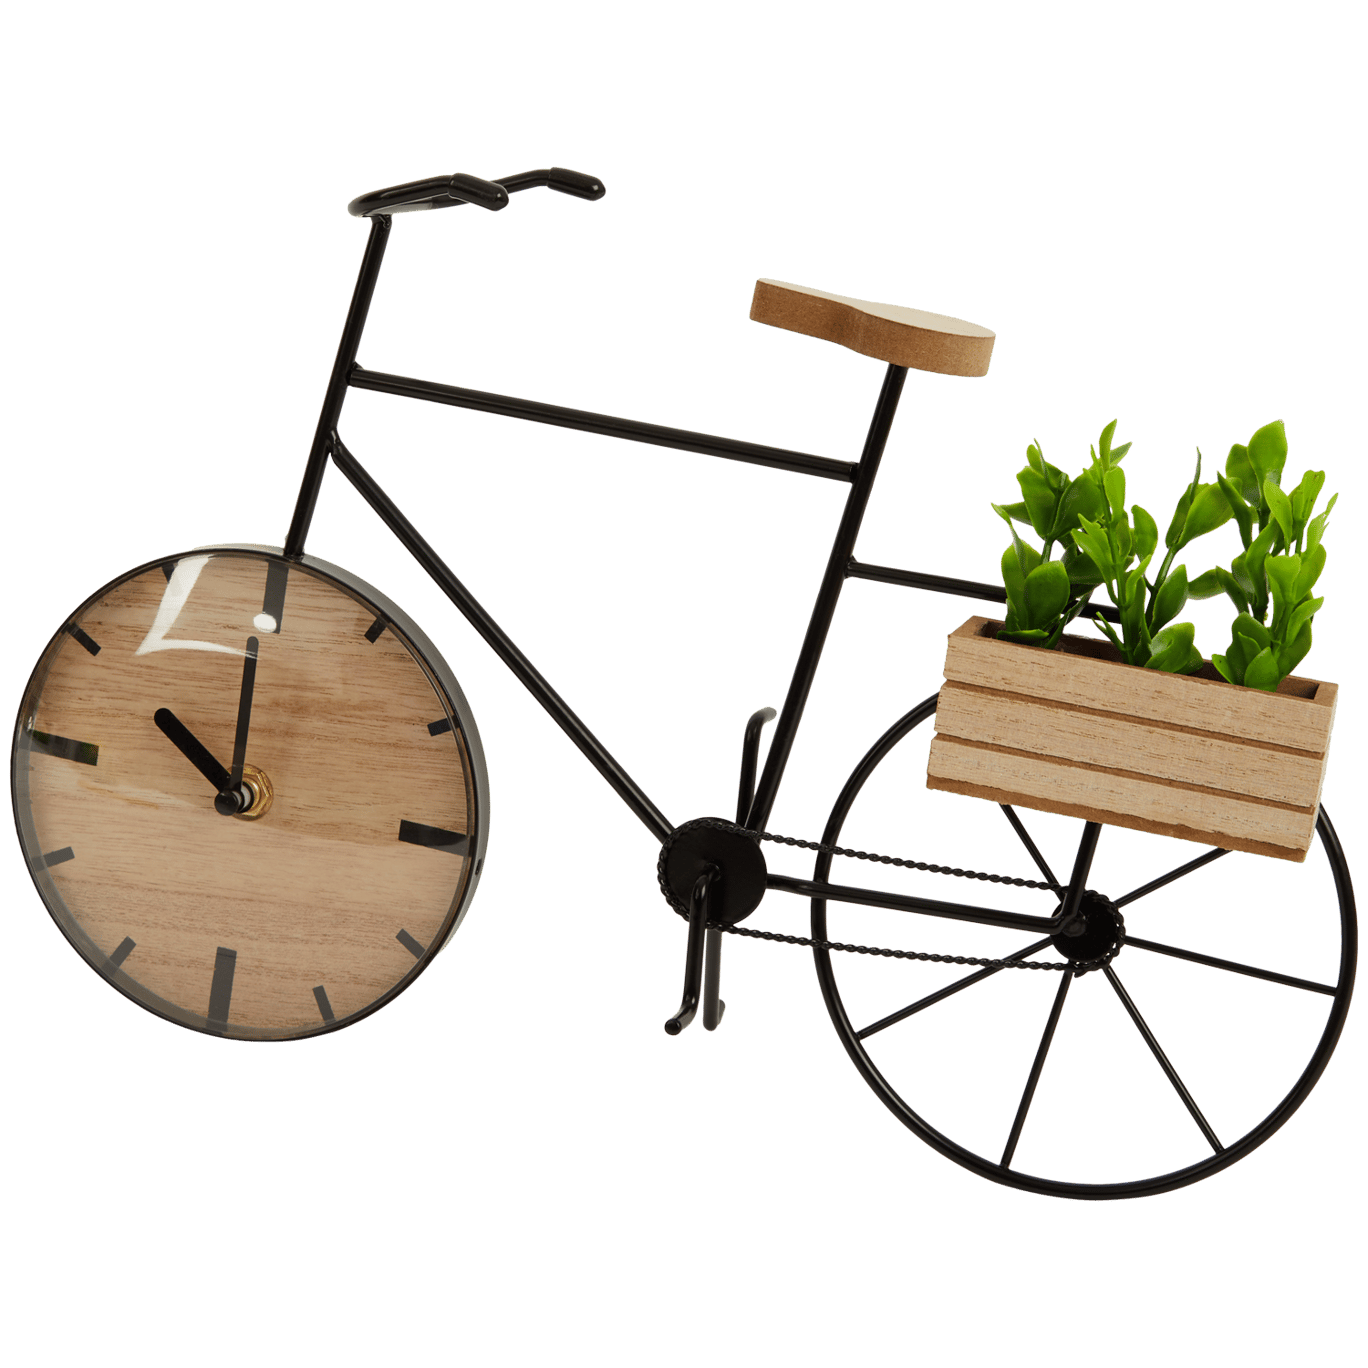 Horloge vélo avec plante